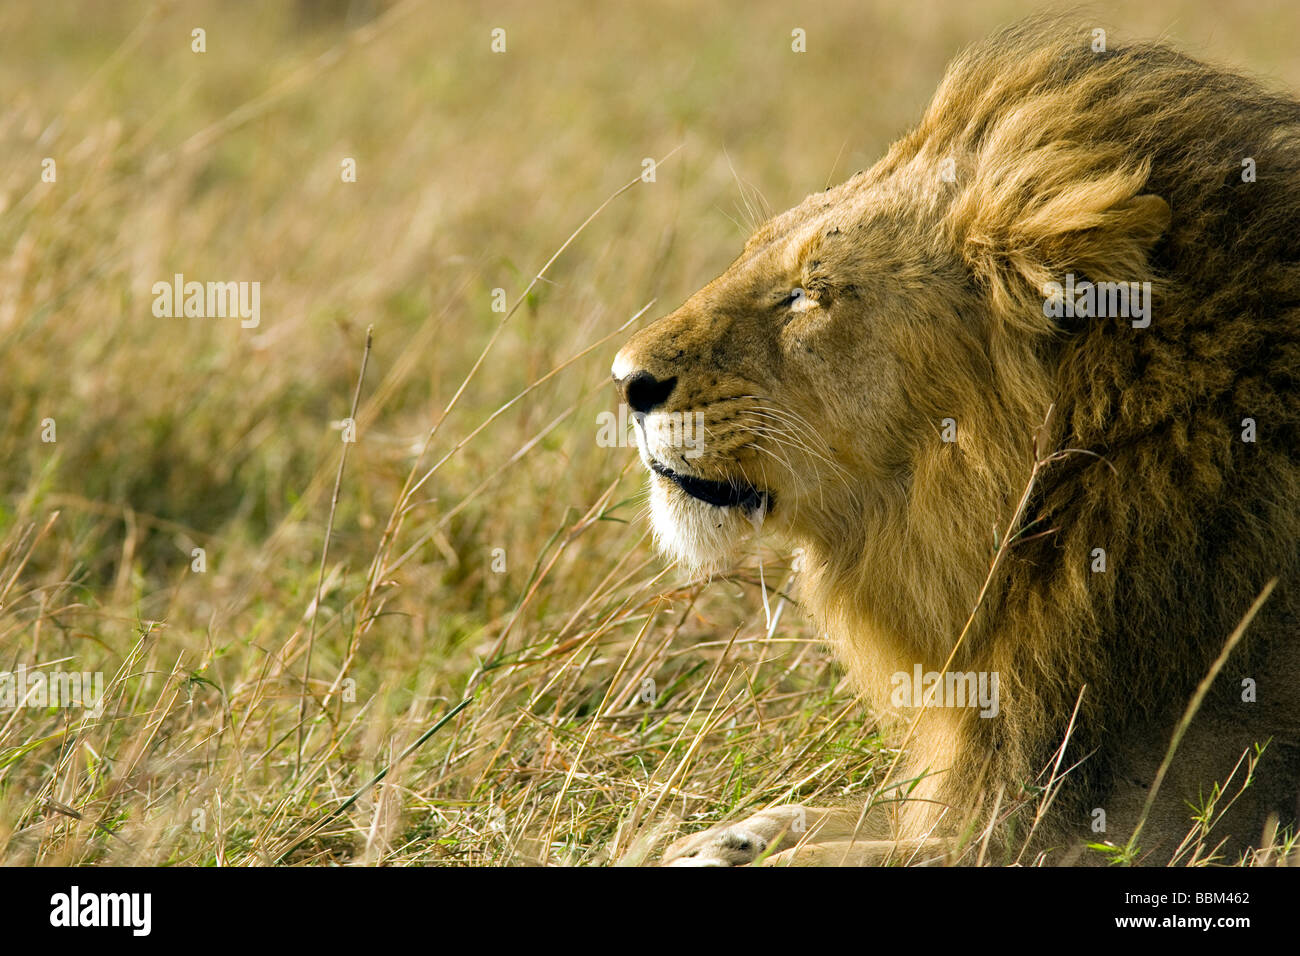 Profil de lion mâle dans le vent - Masai Mara National Reserve, Kenya Banque D'Images